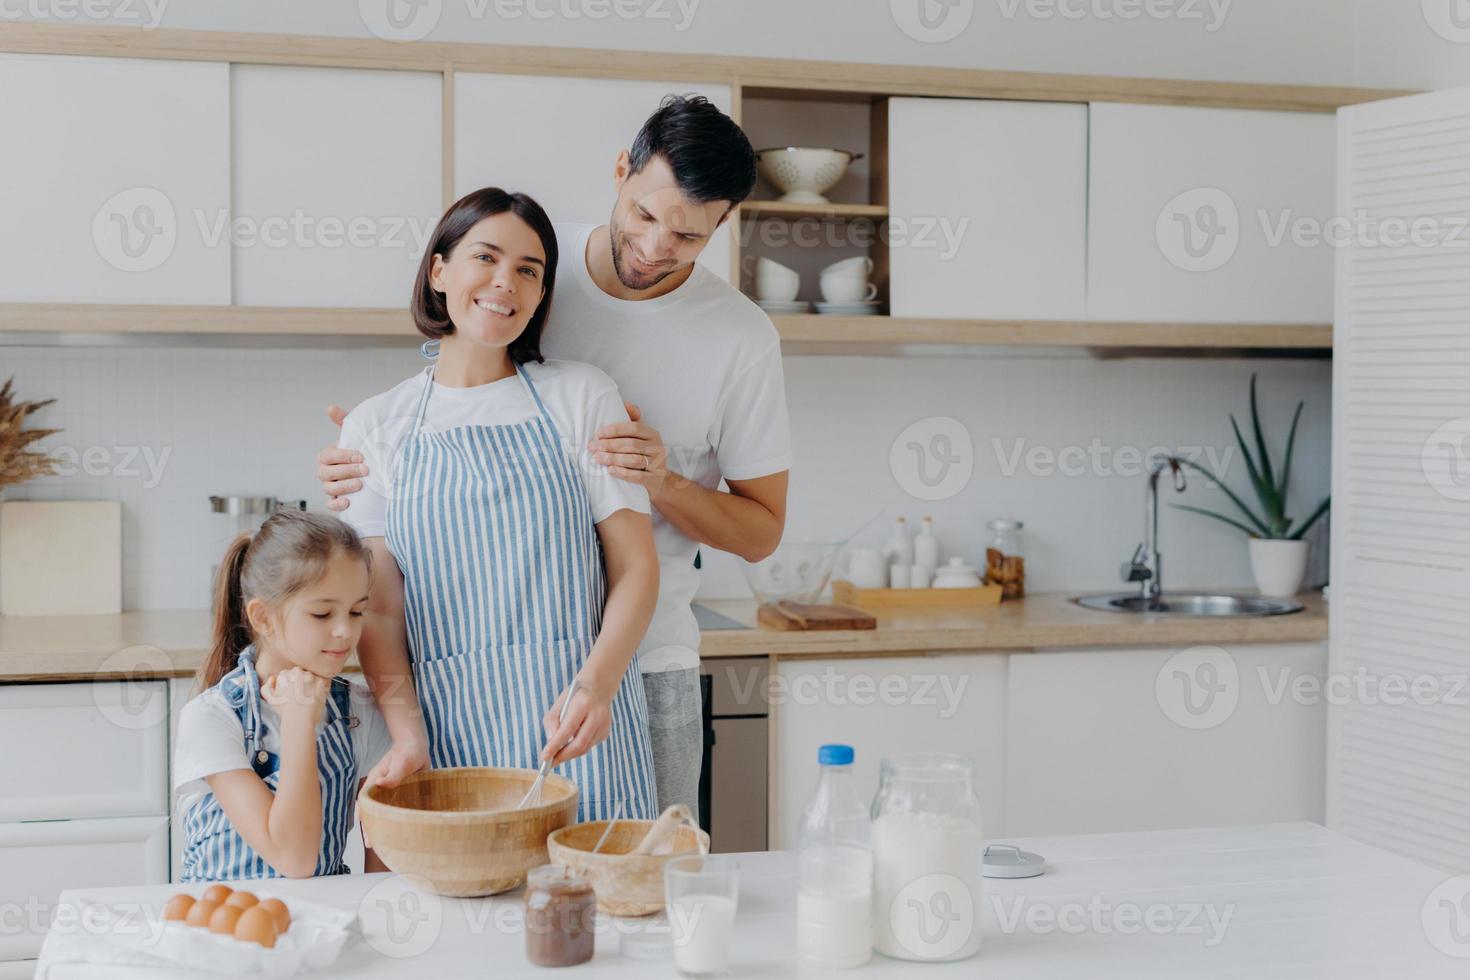 gelukkige familie koken samen in de keuken. vader, moeder en dochter druk bezig met het bereiden van een heerlijke maaltijd thuis. man omhelst vrouw die zwaait en deeg bereidt, koekjes bakt. eten, samenzijn foto